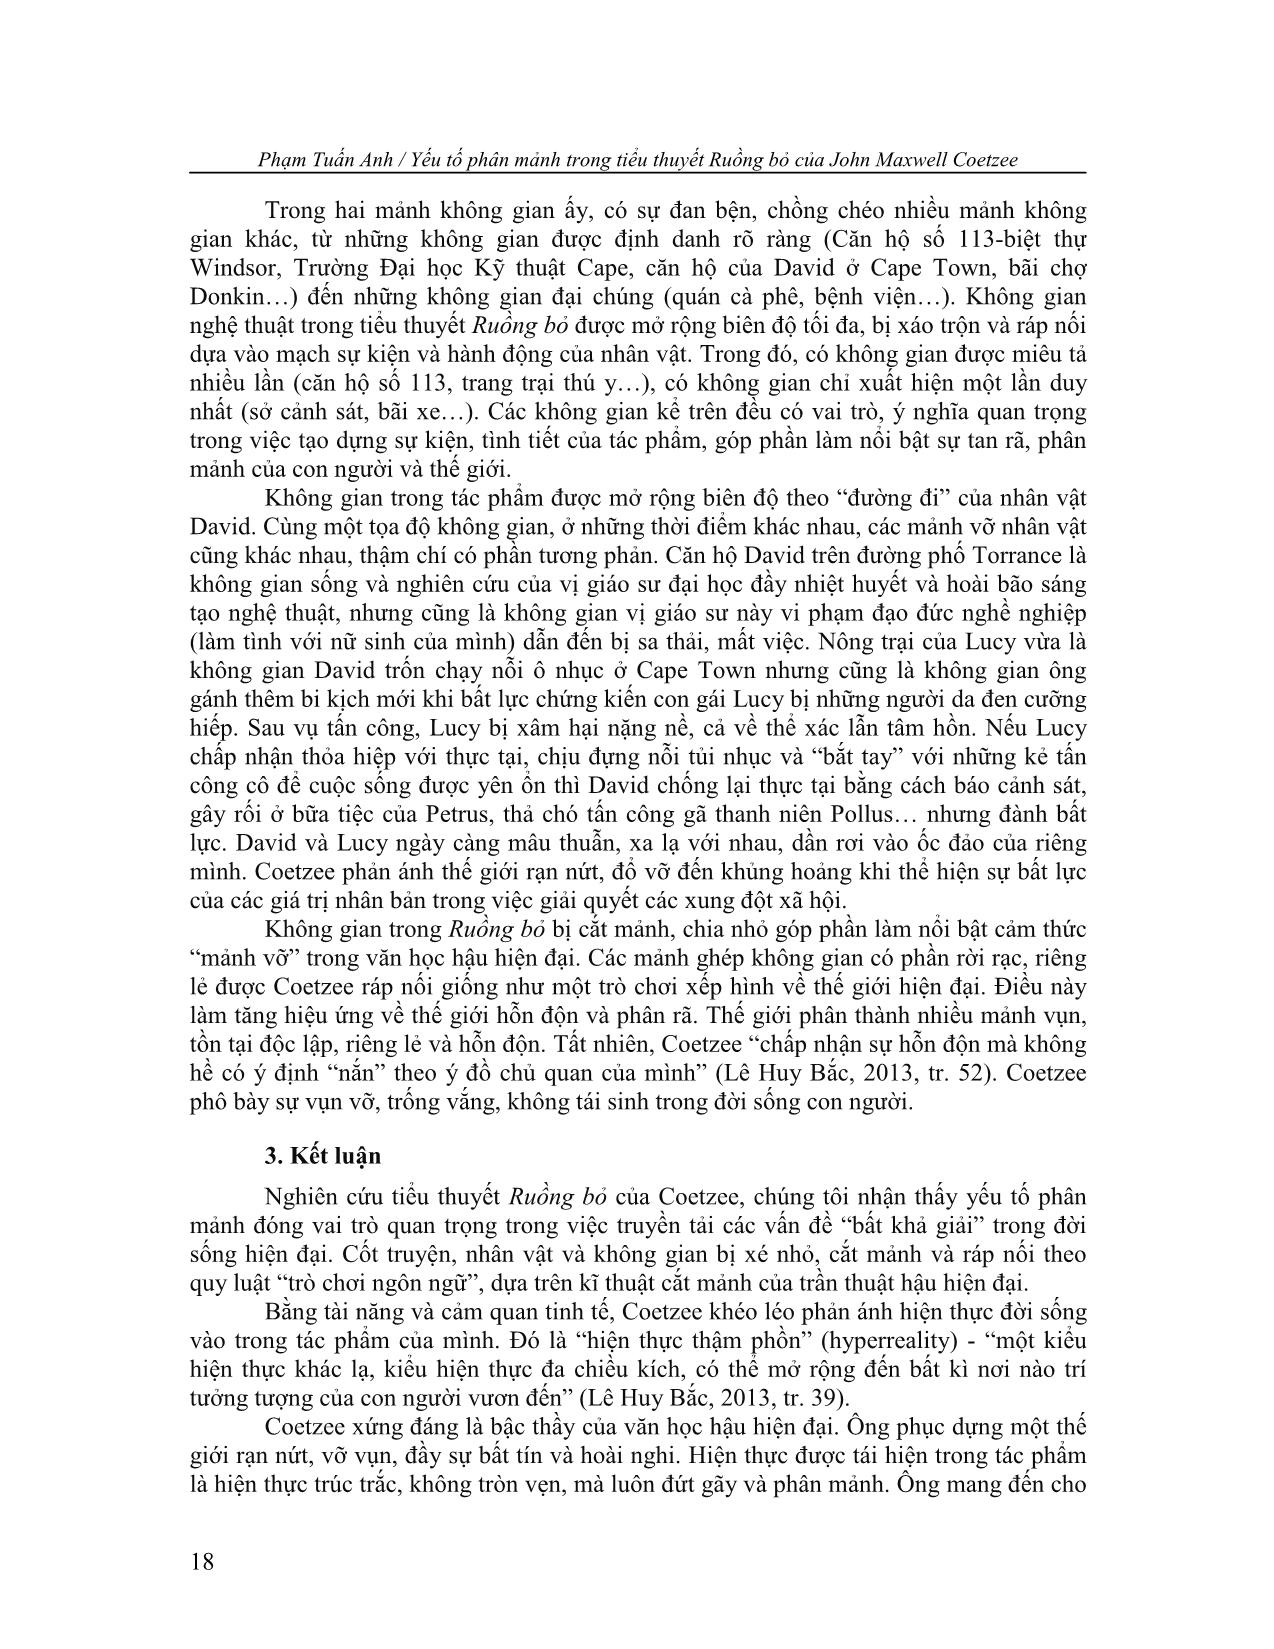 Yếu tố phân mảnh trong tiểu thuyết ruồng bỏ của john maxwell coetzee trang 8